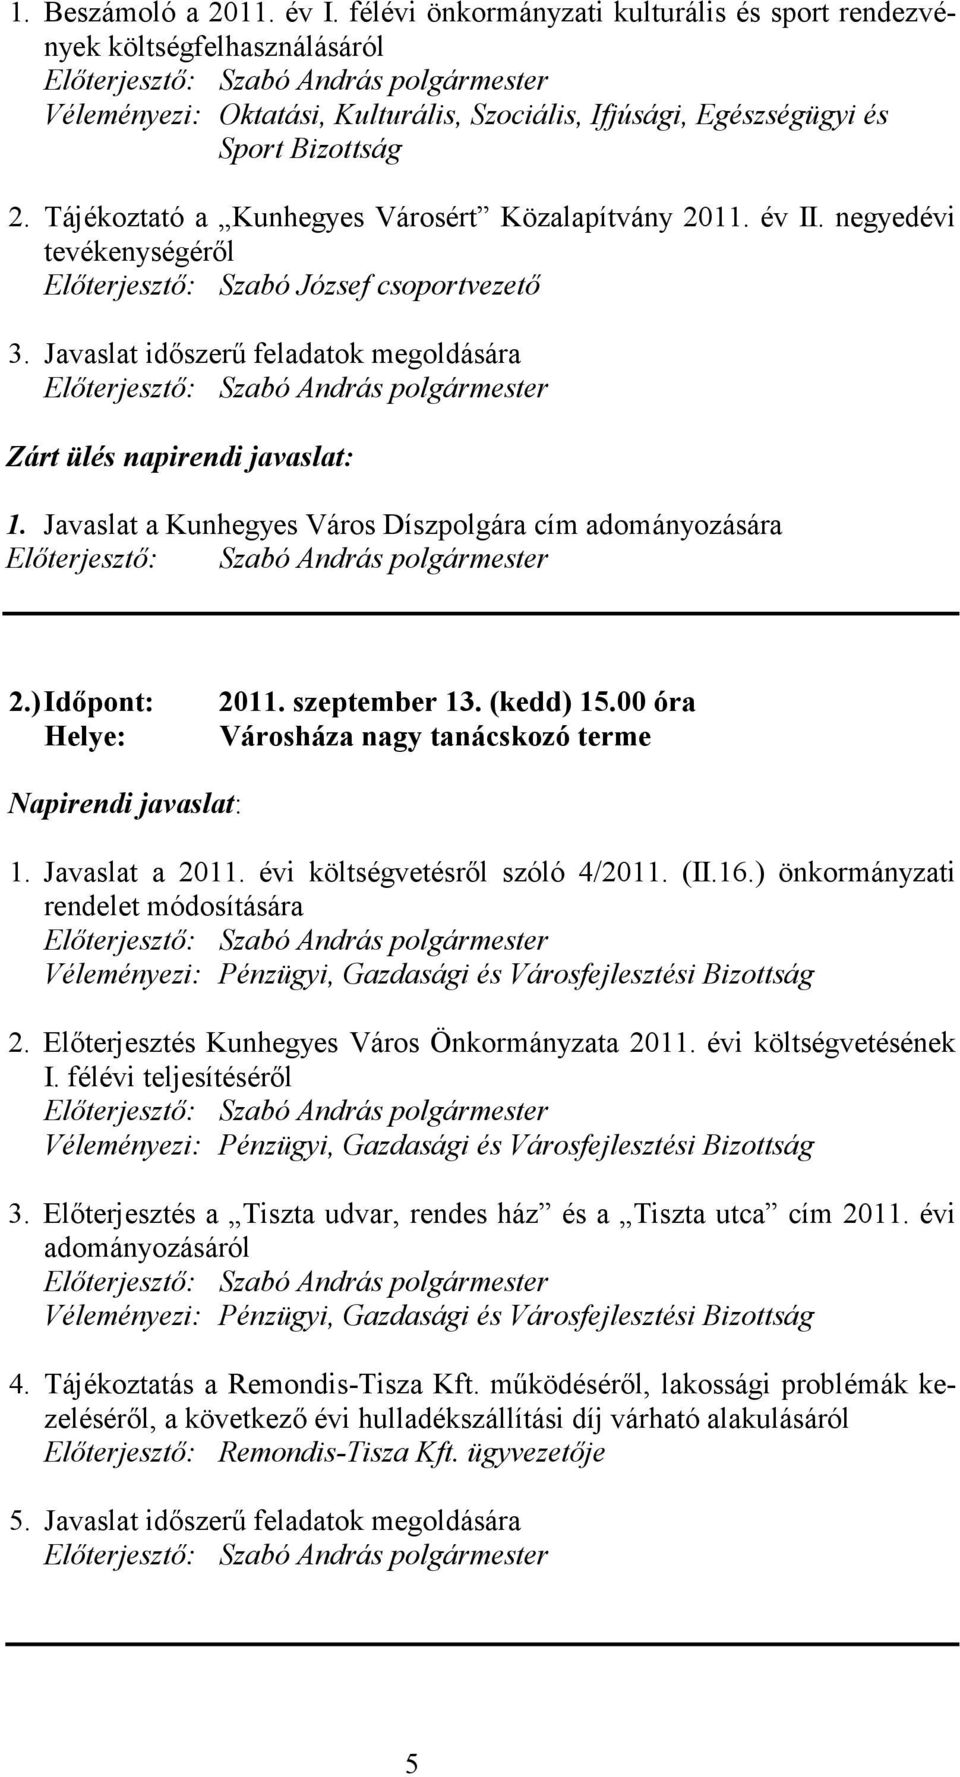 Javaslat időszerű feladatok megoldására Zárt ülés napirendi javaslat: 1. Javaslat a Kunhegyes Város Díszpolgára cím adományozására 2.) Időpont: 2011. szeptember 13. (kedd) 15.